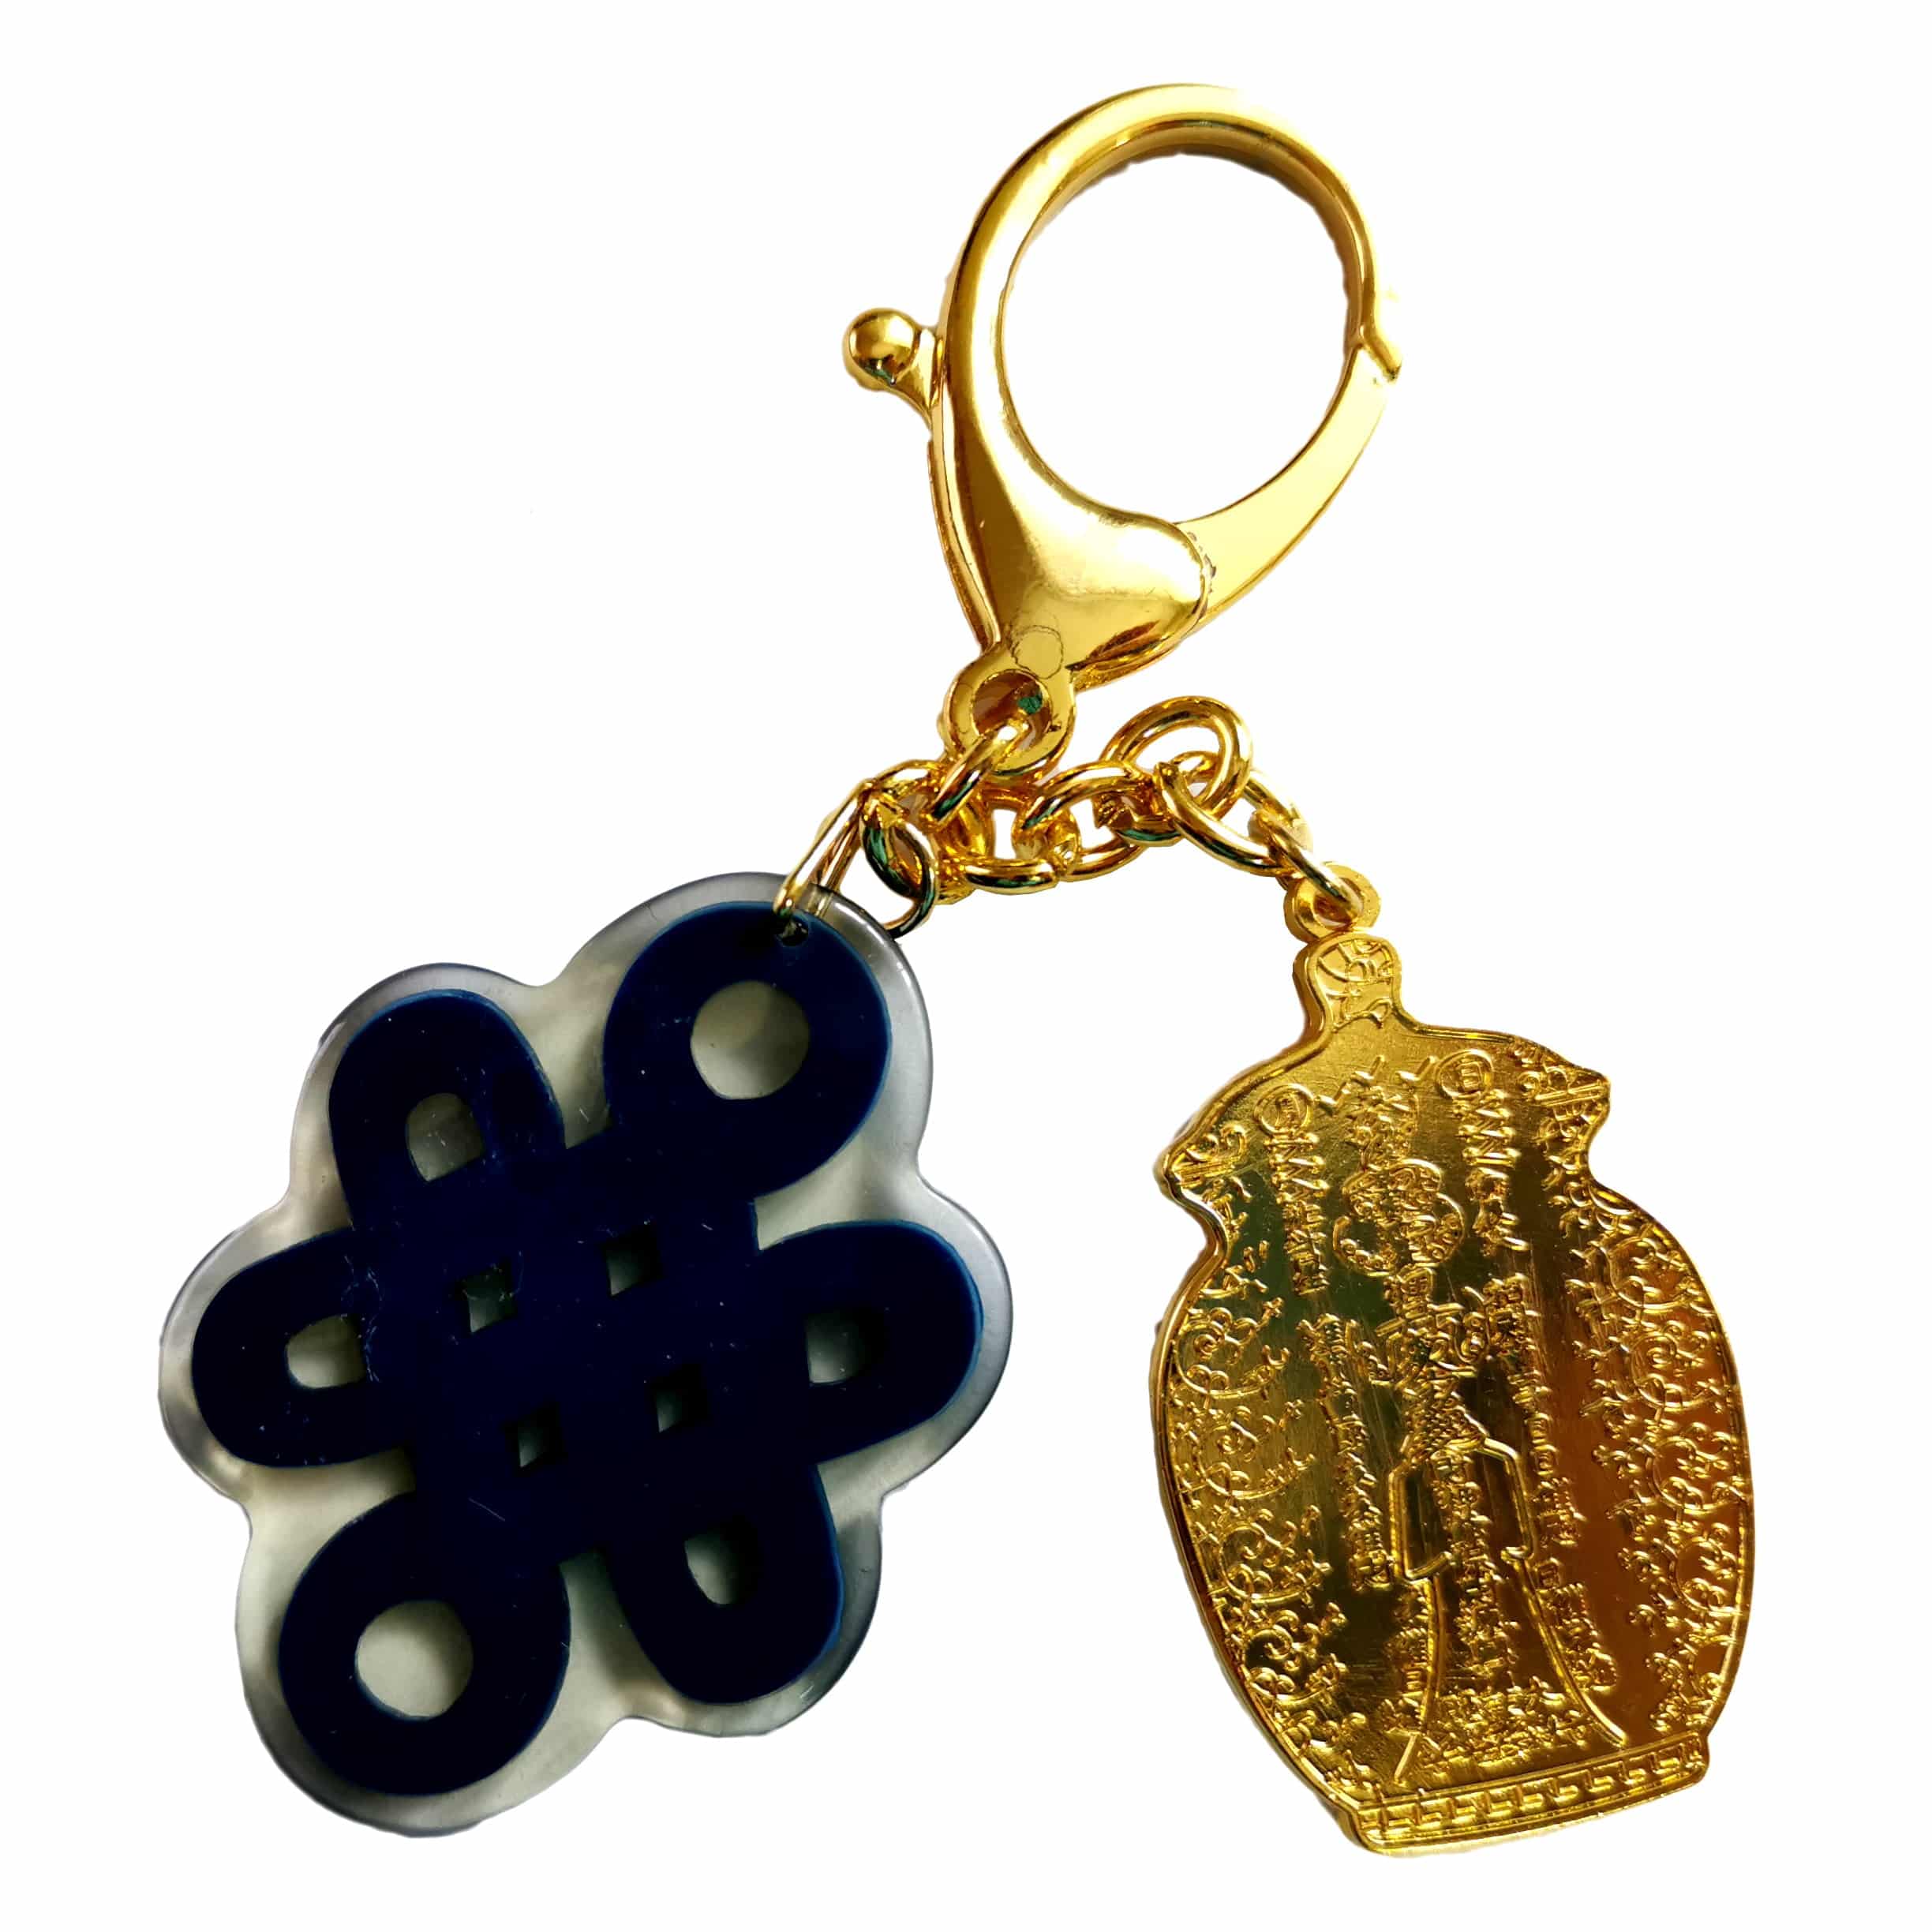 Amuleta Cu Vasul Abundentei Si Nod Mistic